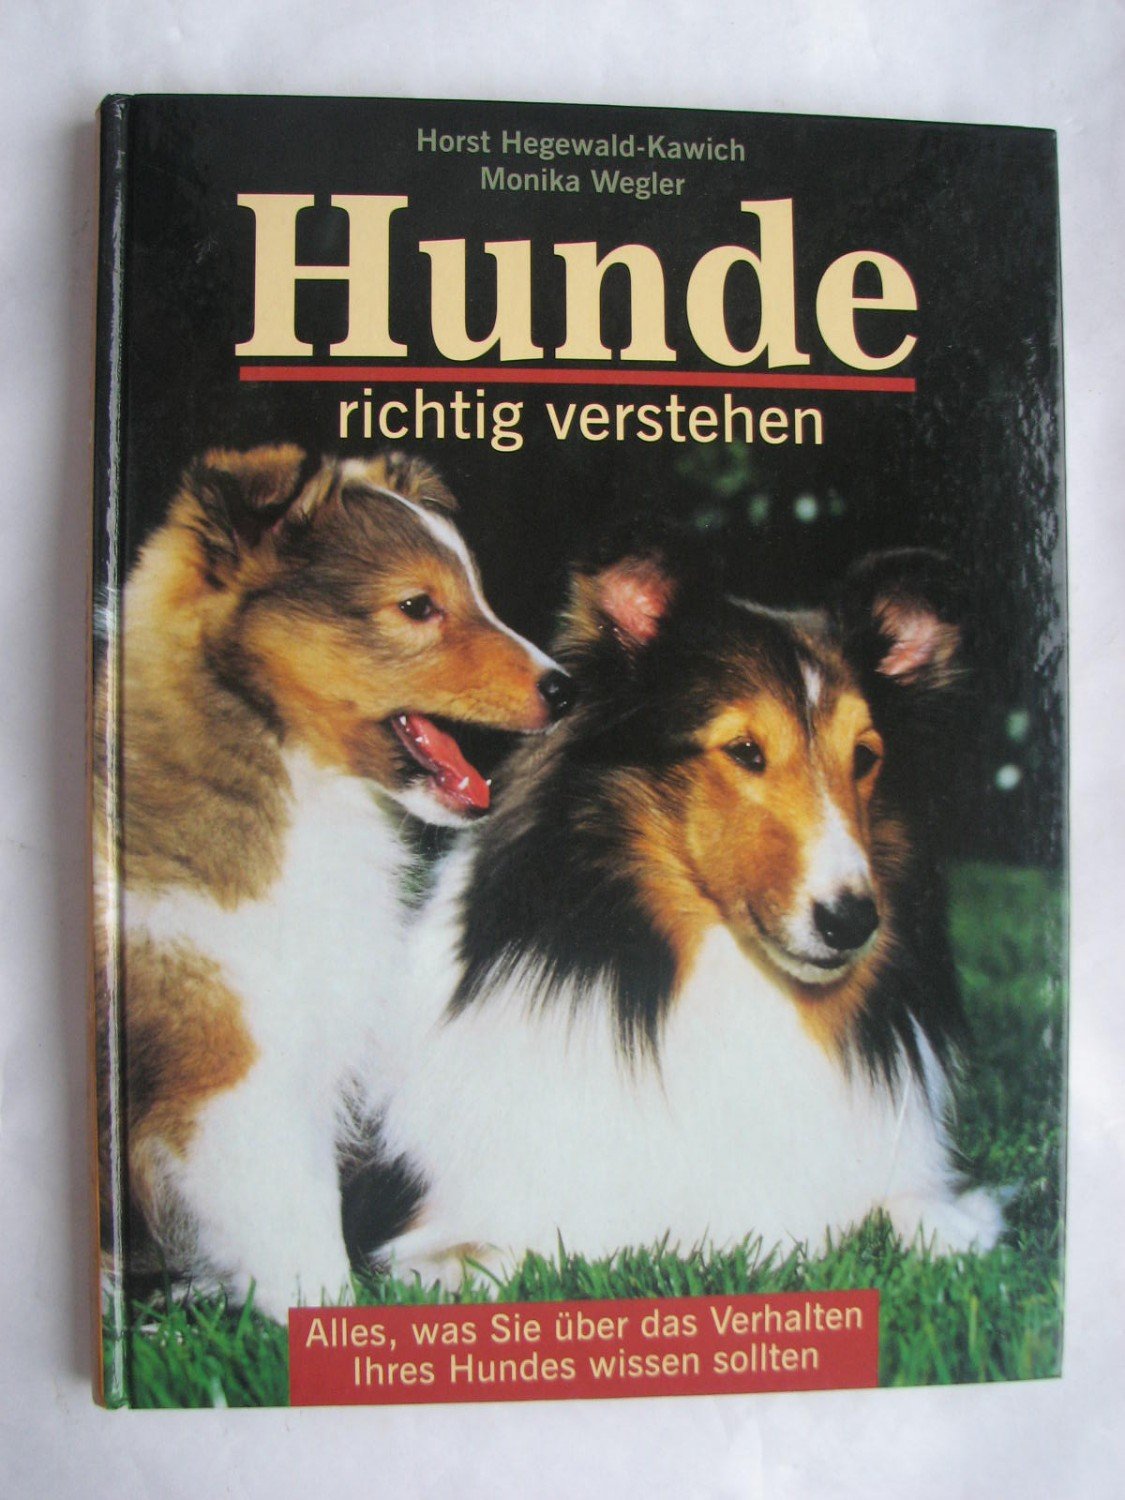 80+ Hunde Verstehen Buch smilesinthenight